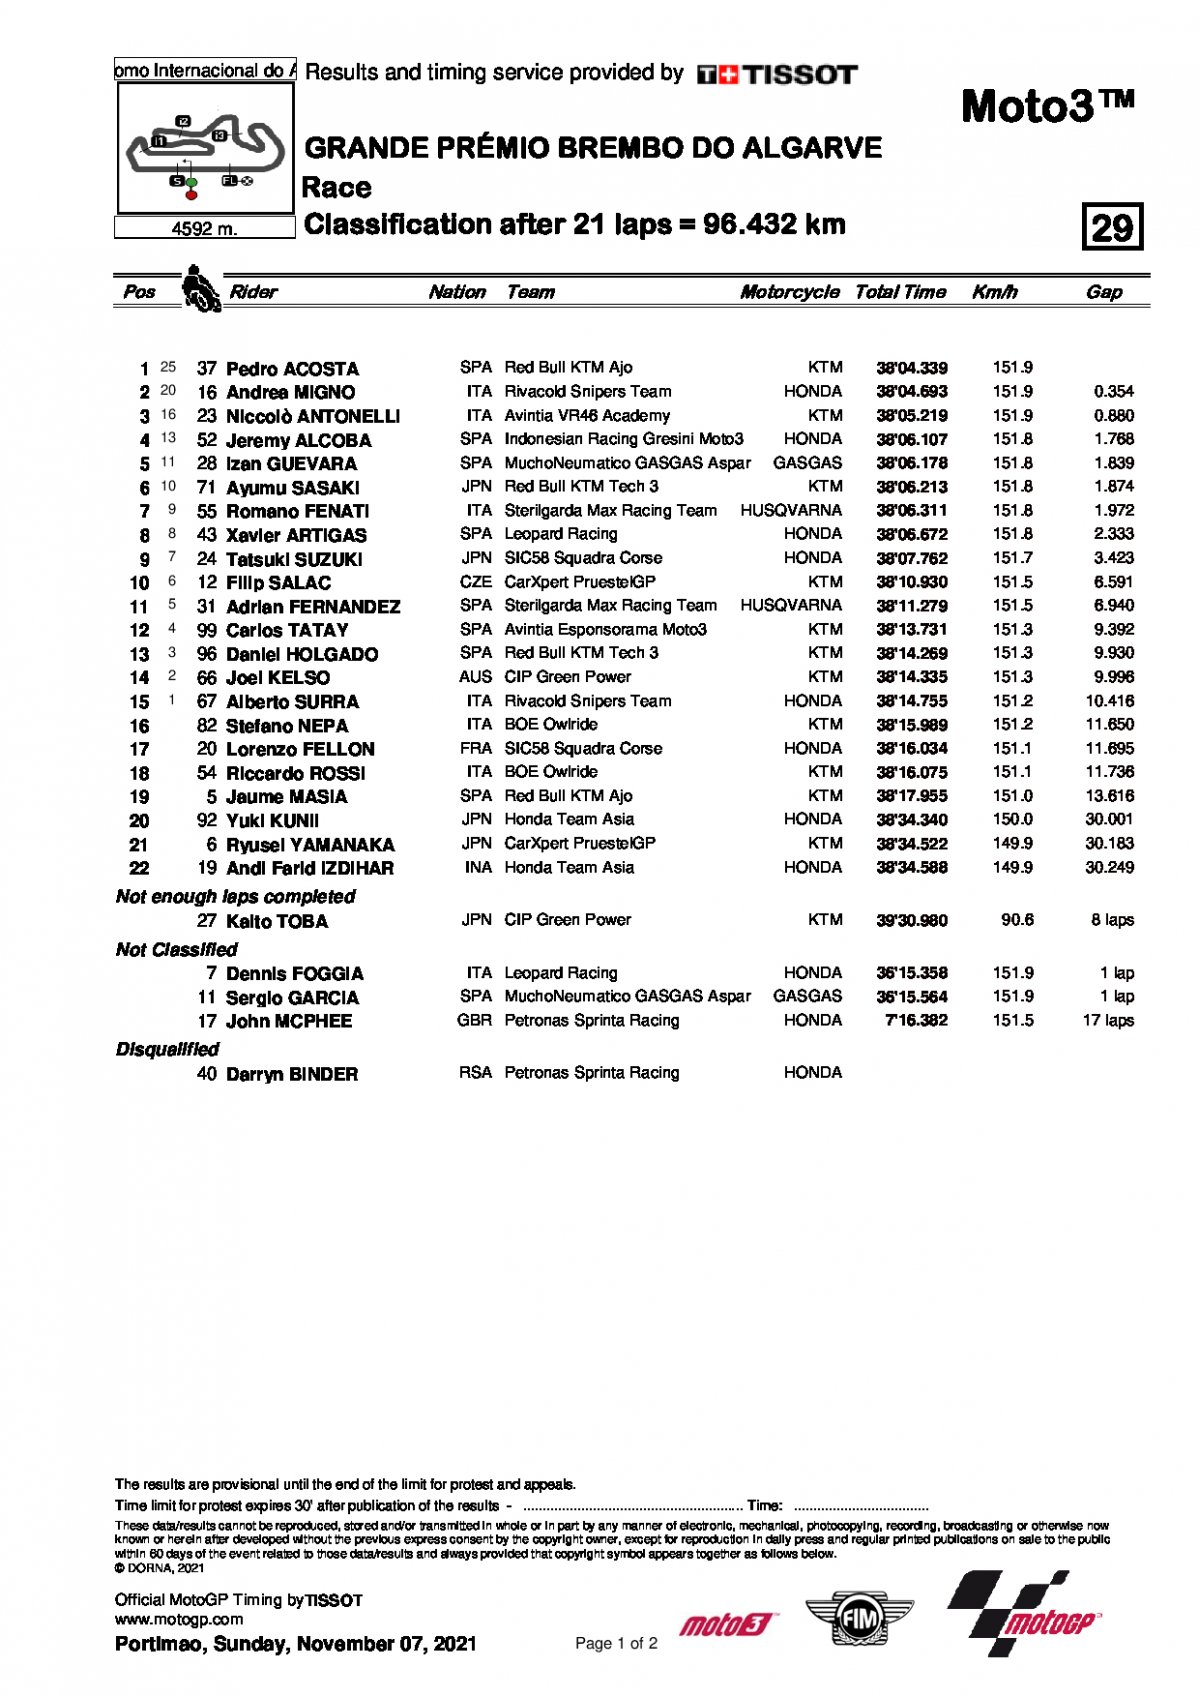 Обновленные результаты Гран-При Альгарве, Moto3 (7/11/2021)